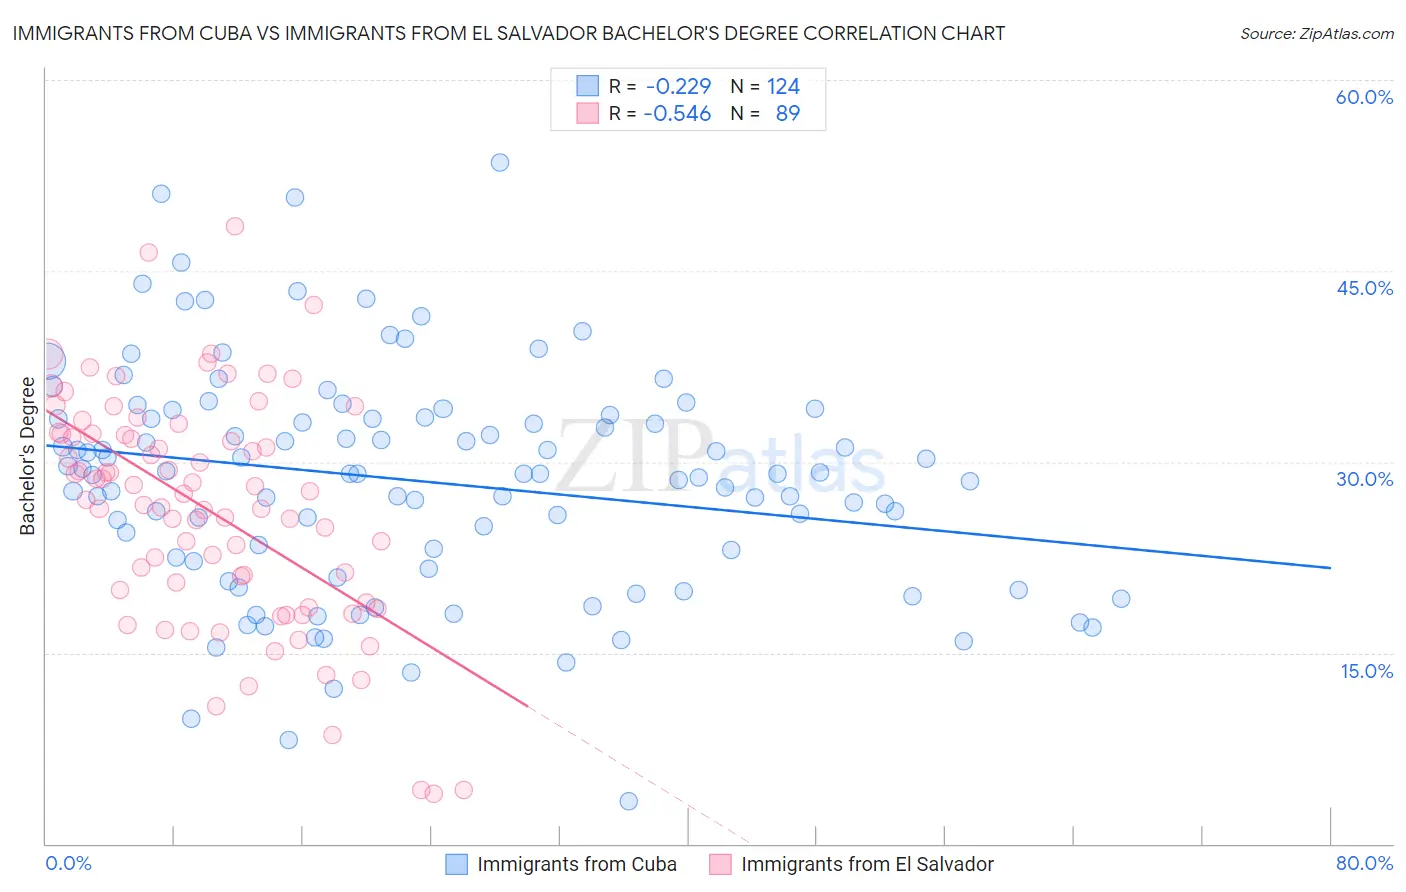 Immigrants from Cuba vs Immigrants from El Salvador Bachelor's Degree